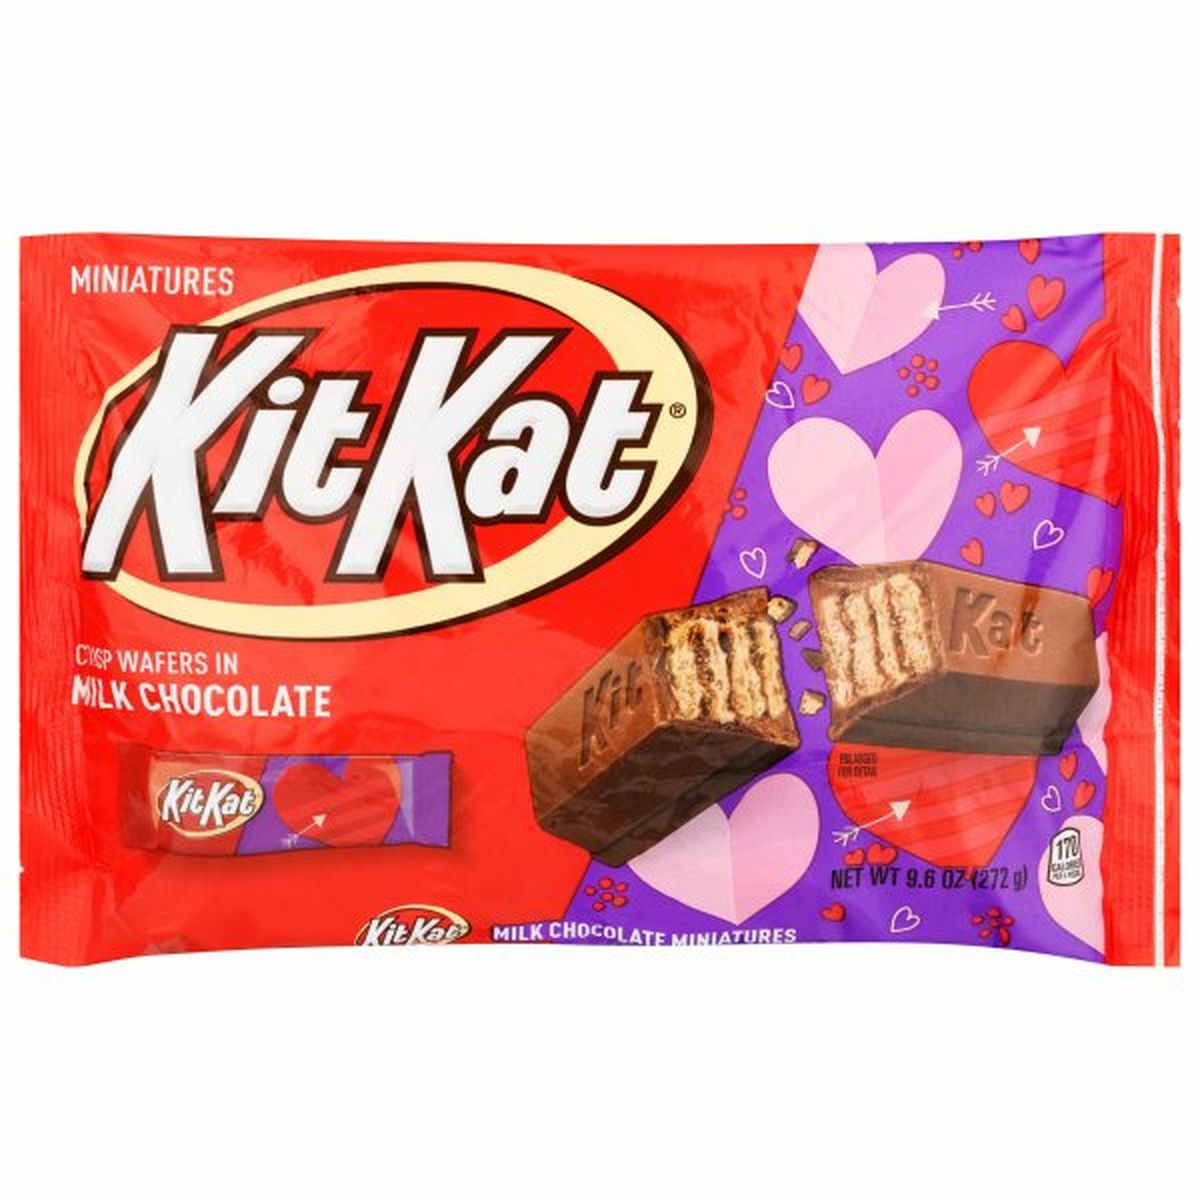 Calories in Kit Kat Milk Chocolate, Miniatures